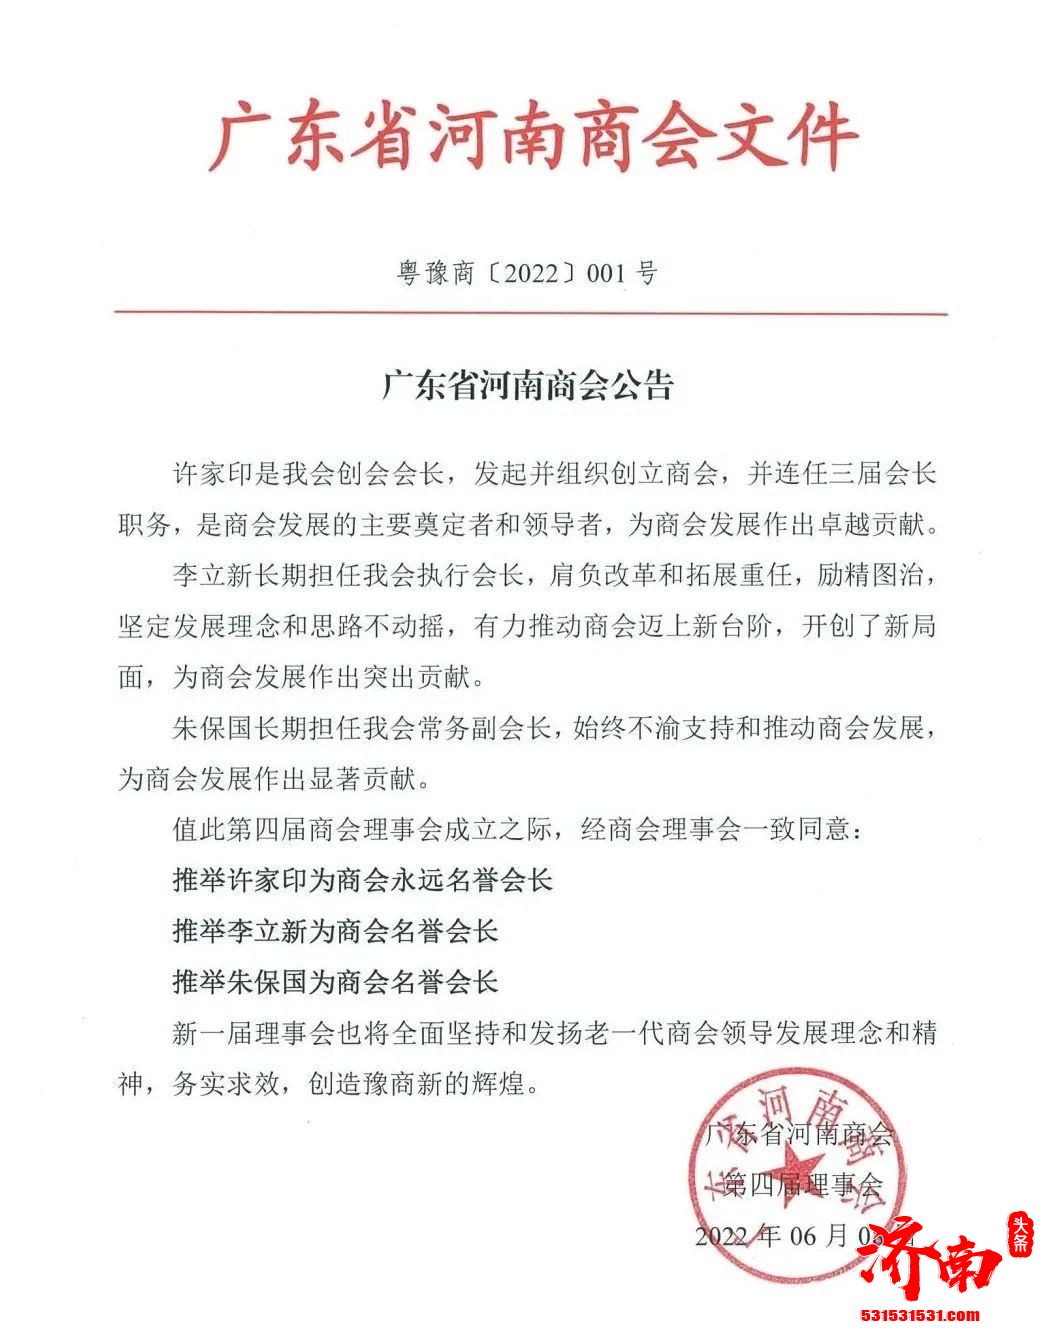 广东省河南商会:推举许家印为商会永远名誉会长